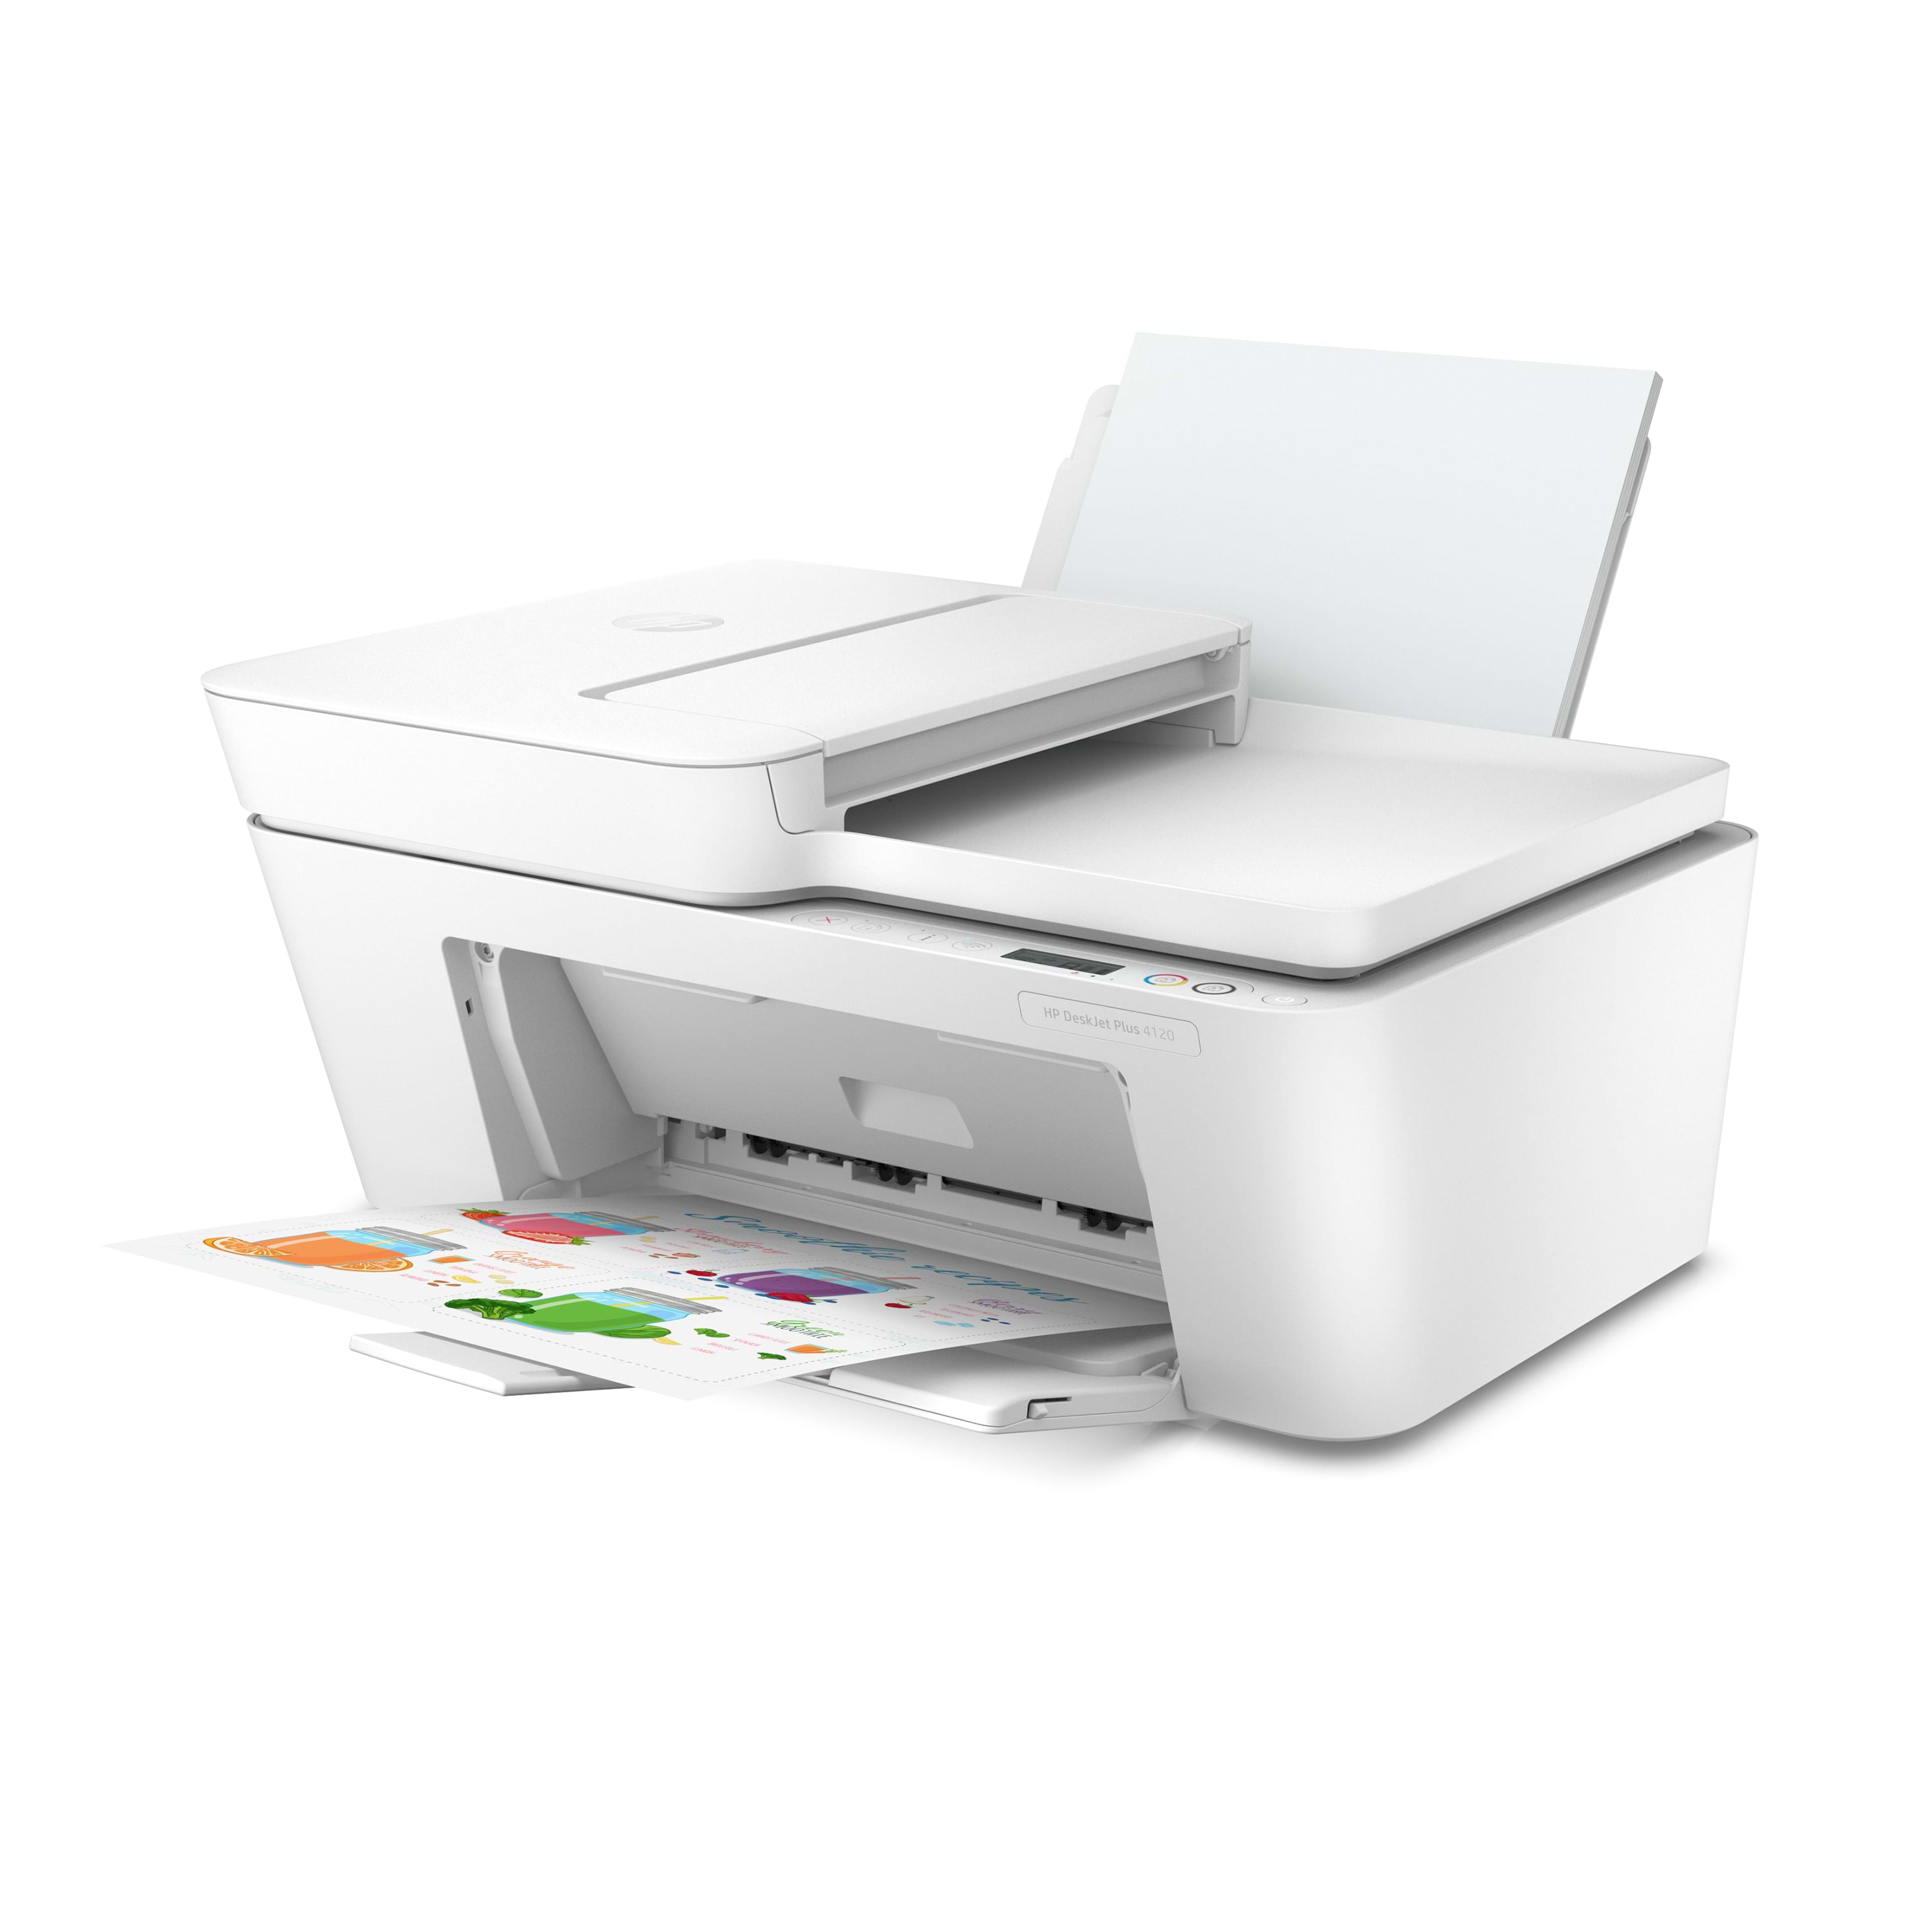 מדפסת משולבת  HP DeskJet Plus 4120 AIO - צבע לבן שנה אחריות ע